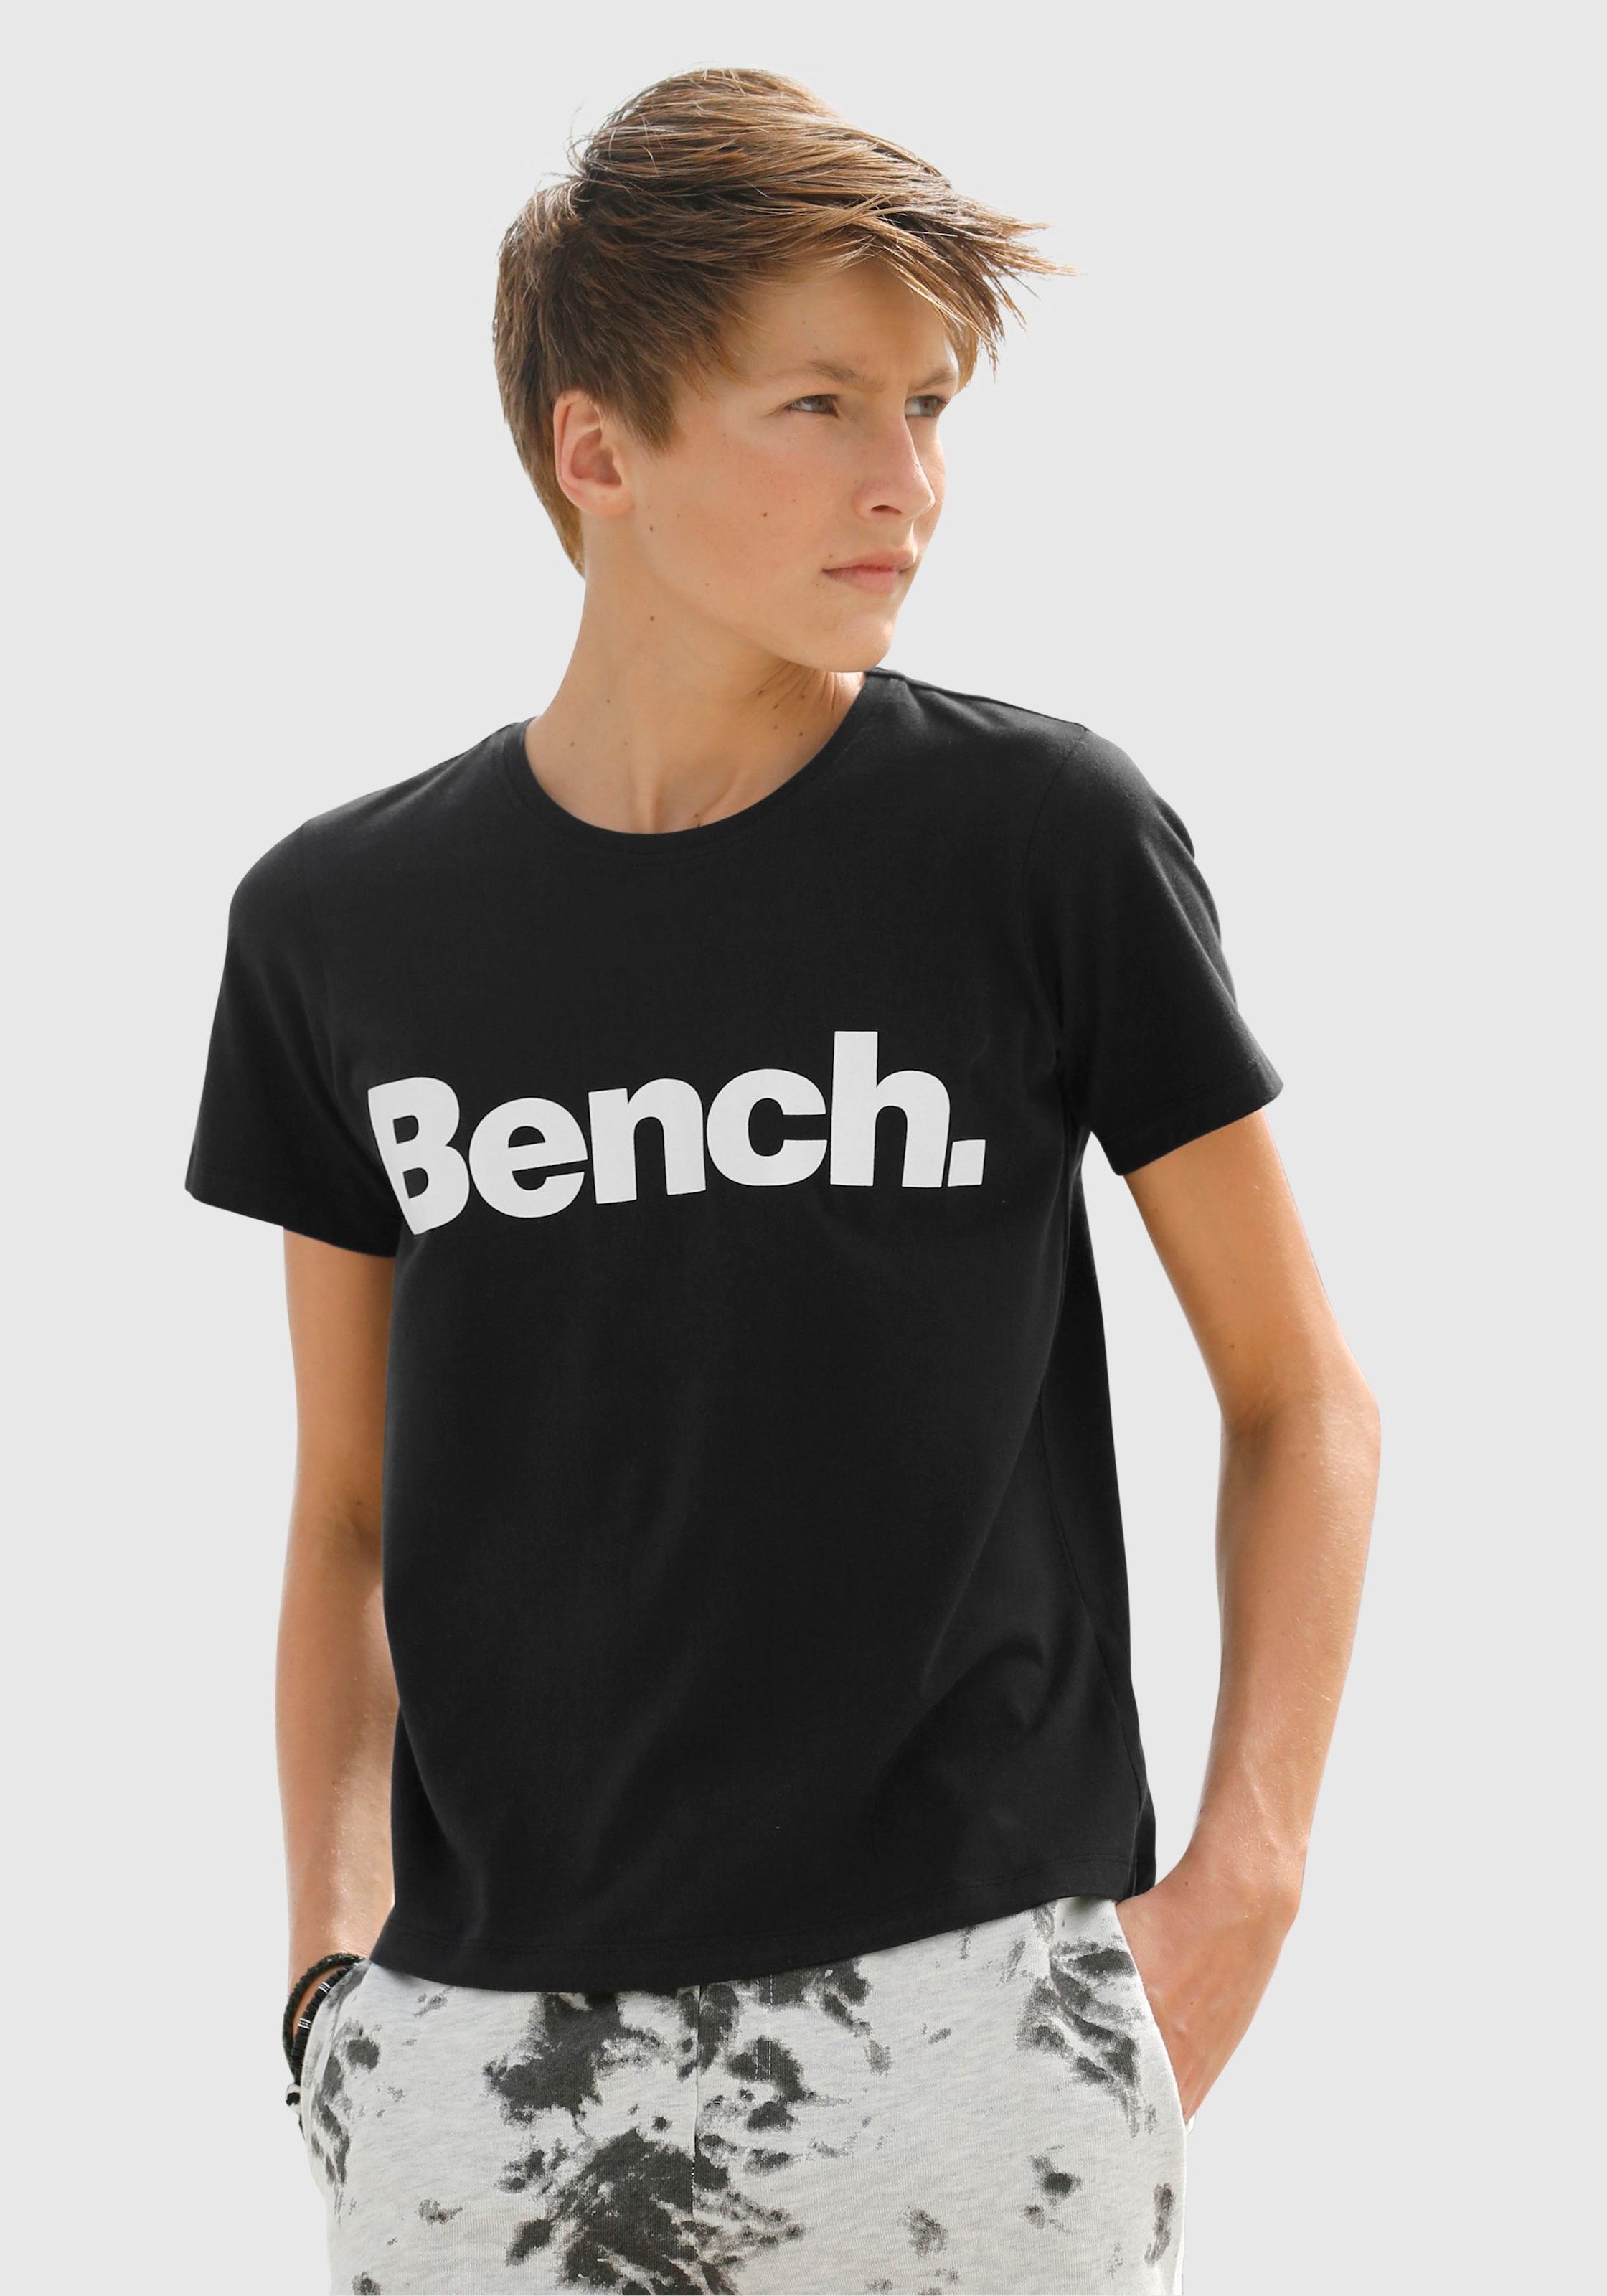 »Basic«, Bench. T-Shirt ohne Logodruck mit Modische shoppen Mindestbestellwert